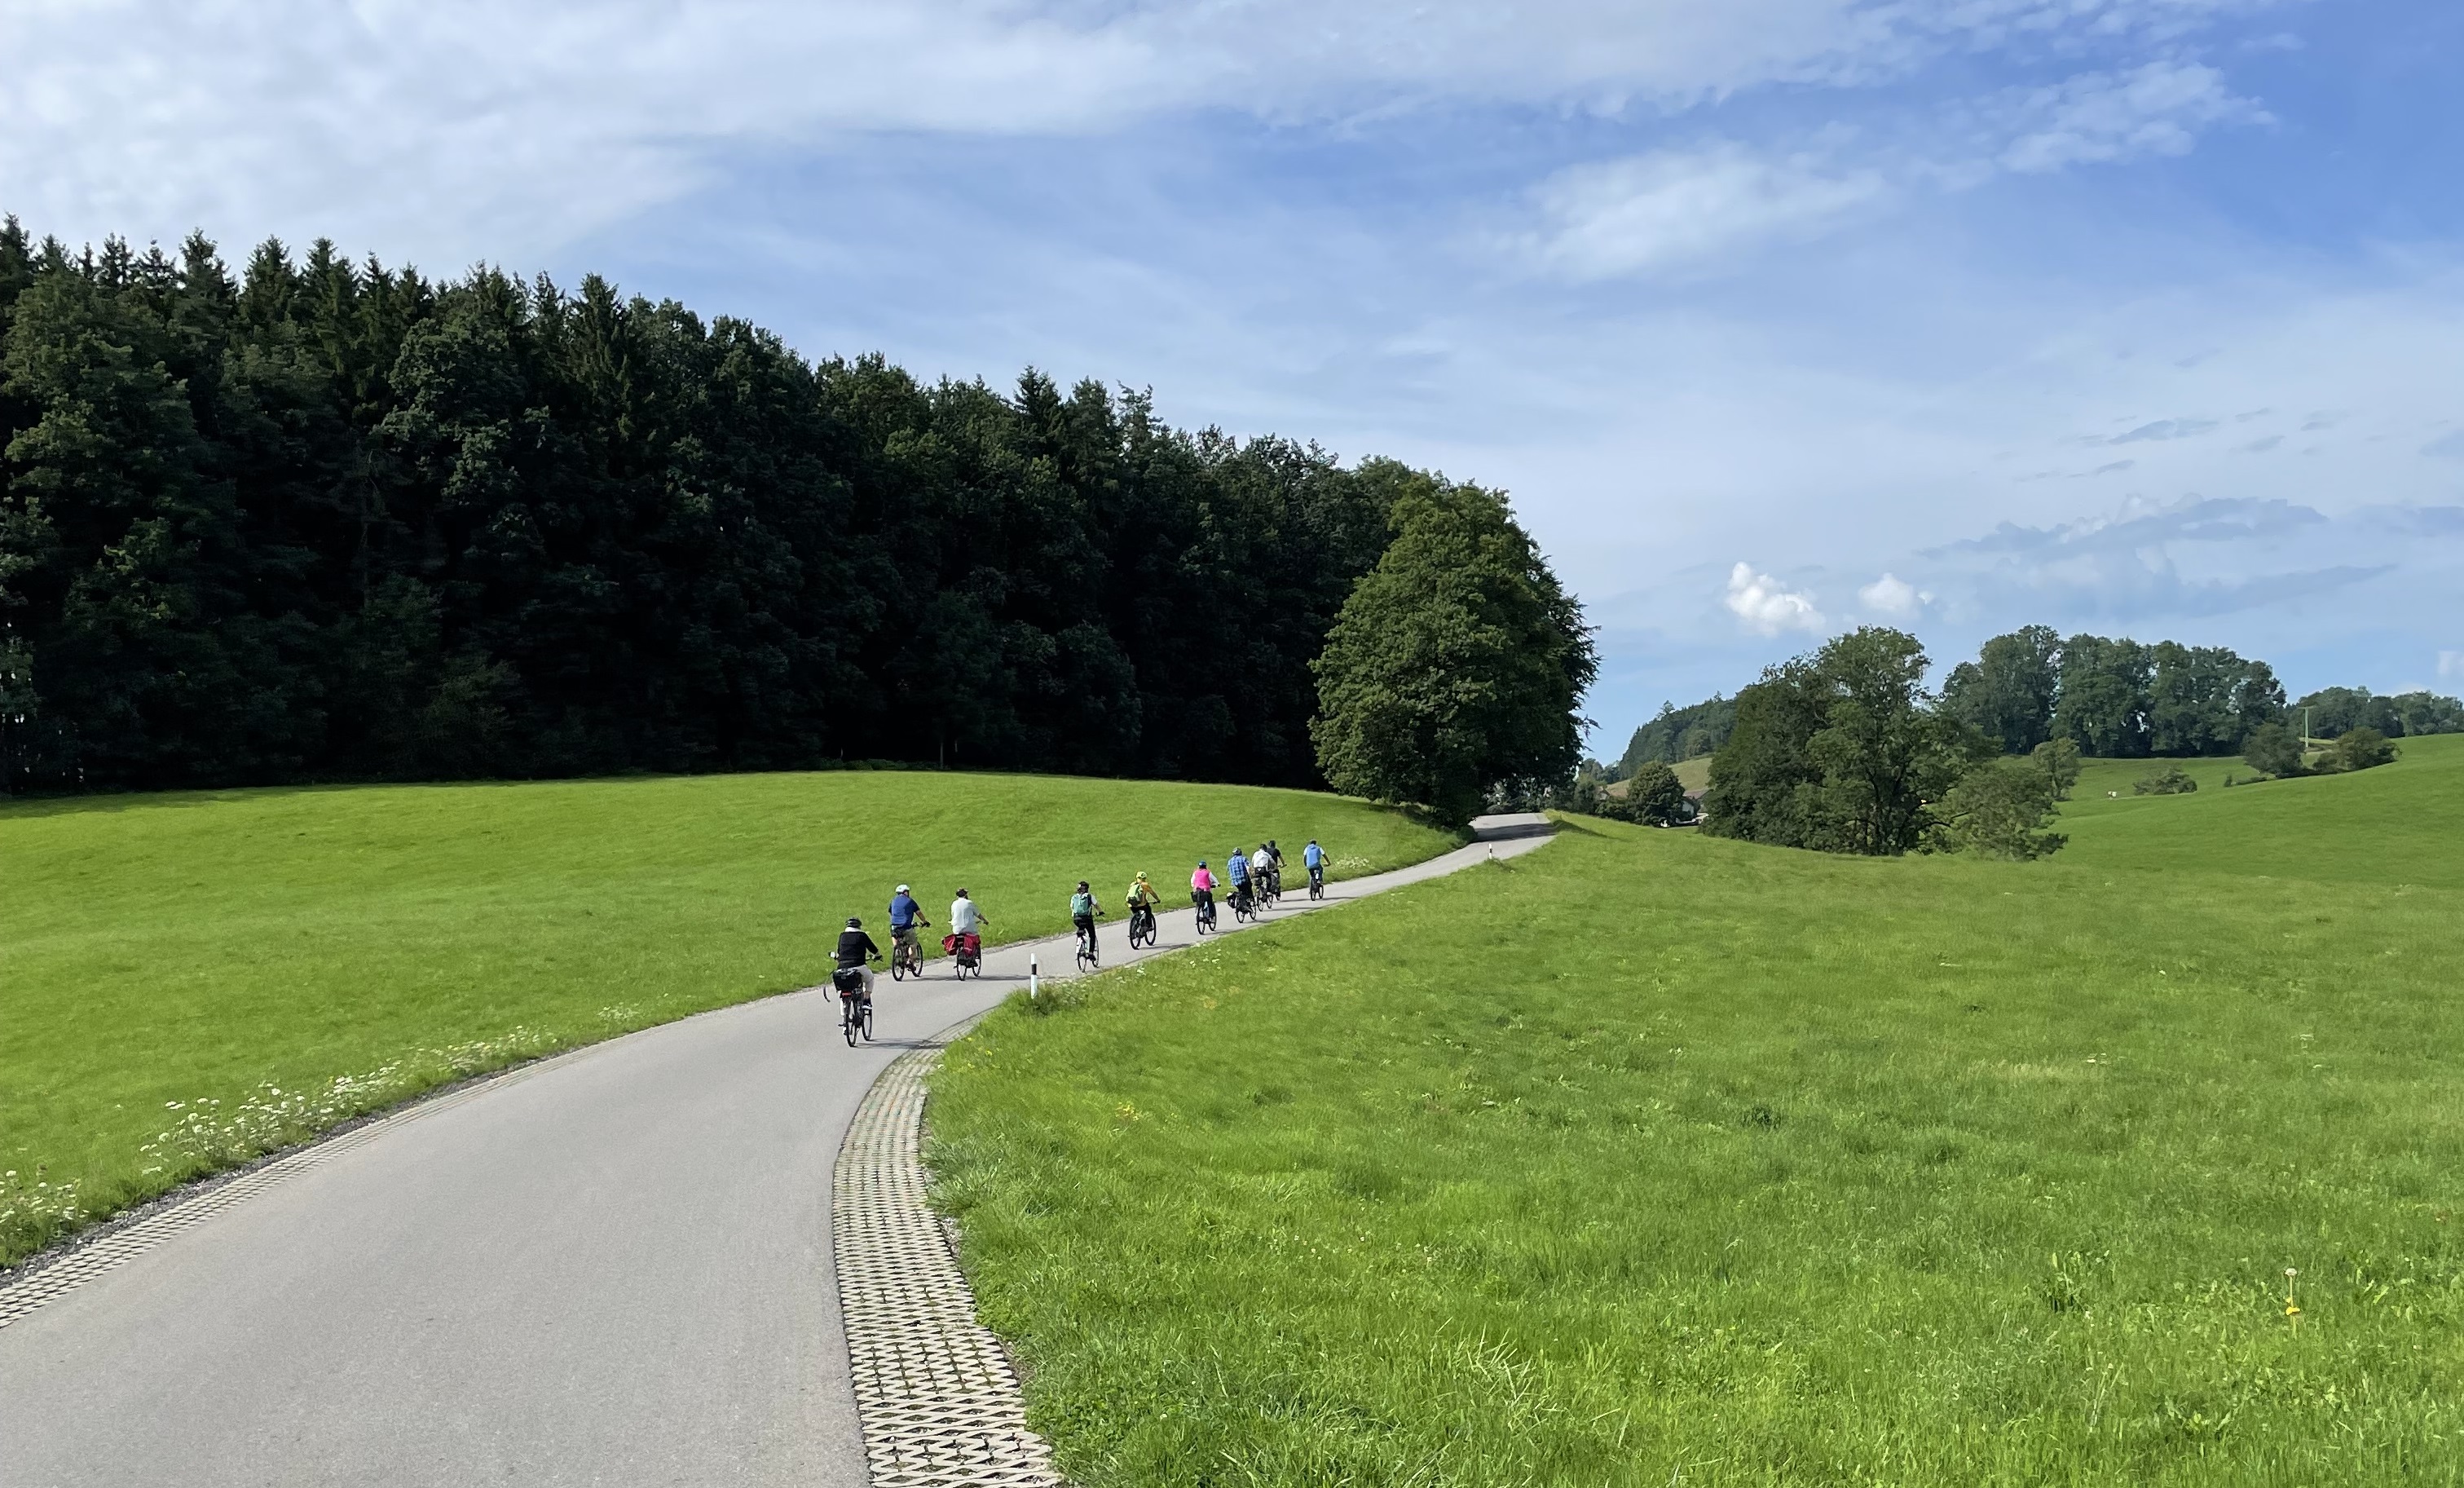 Radlergruppe unterwegs auf der BioGenuss-Radtour Karsee-Leupolz